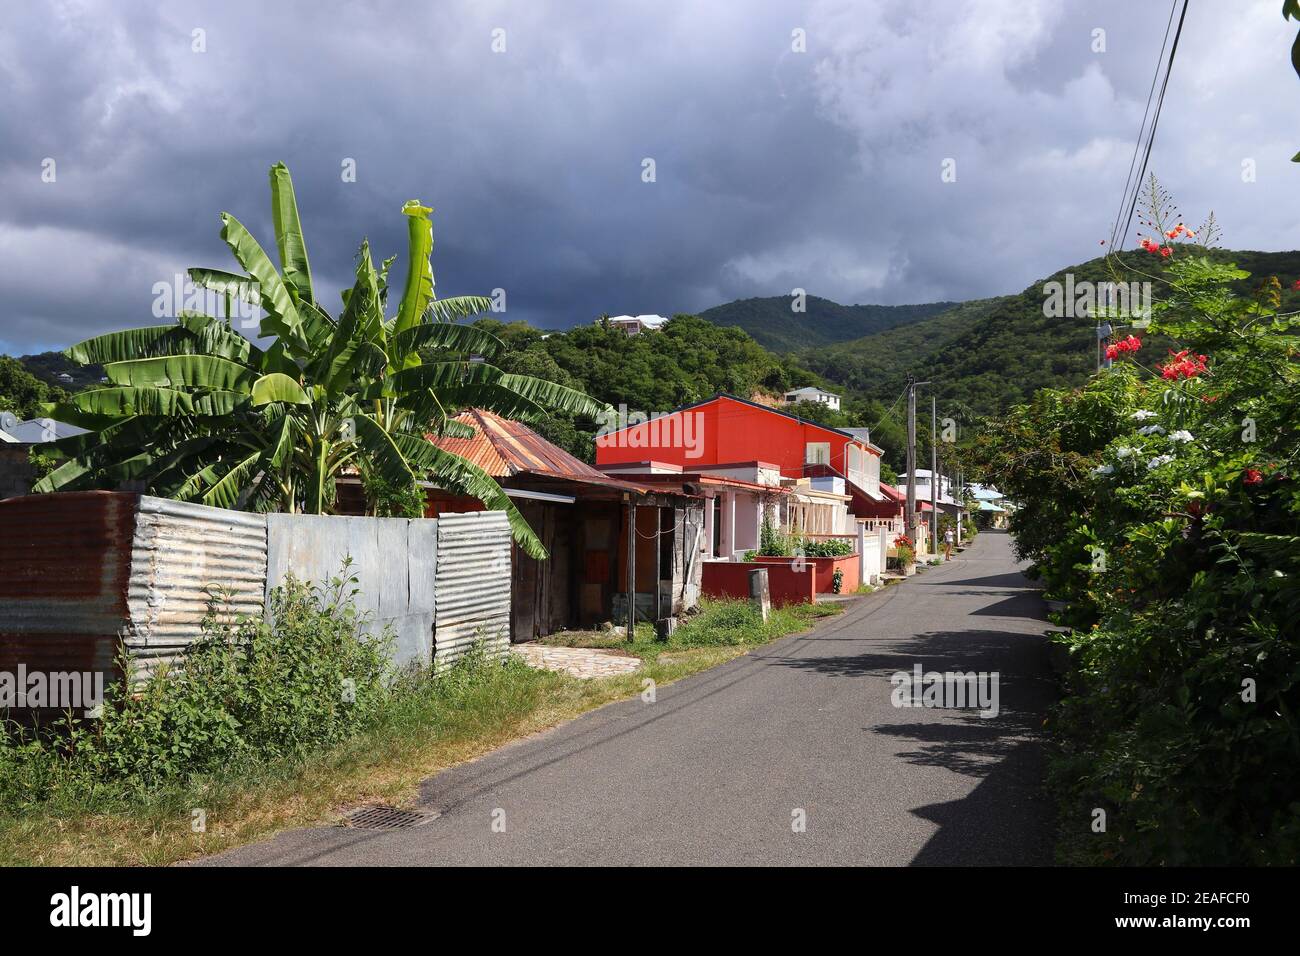 Deshaies Stadt, Guadeloupe. Typische Ortsstraße auf der Insel Basse-Terre. Stockfoto